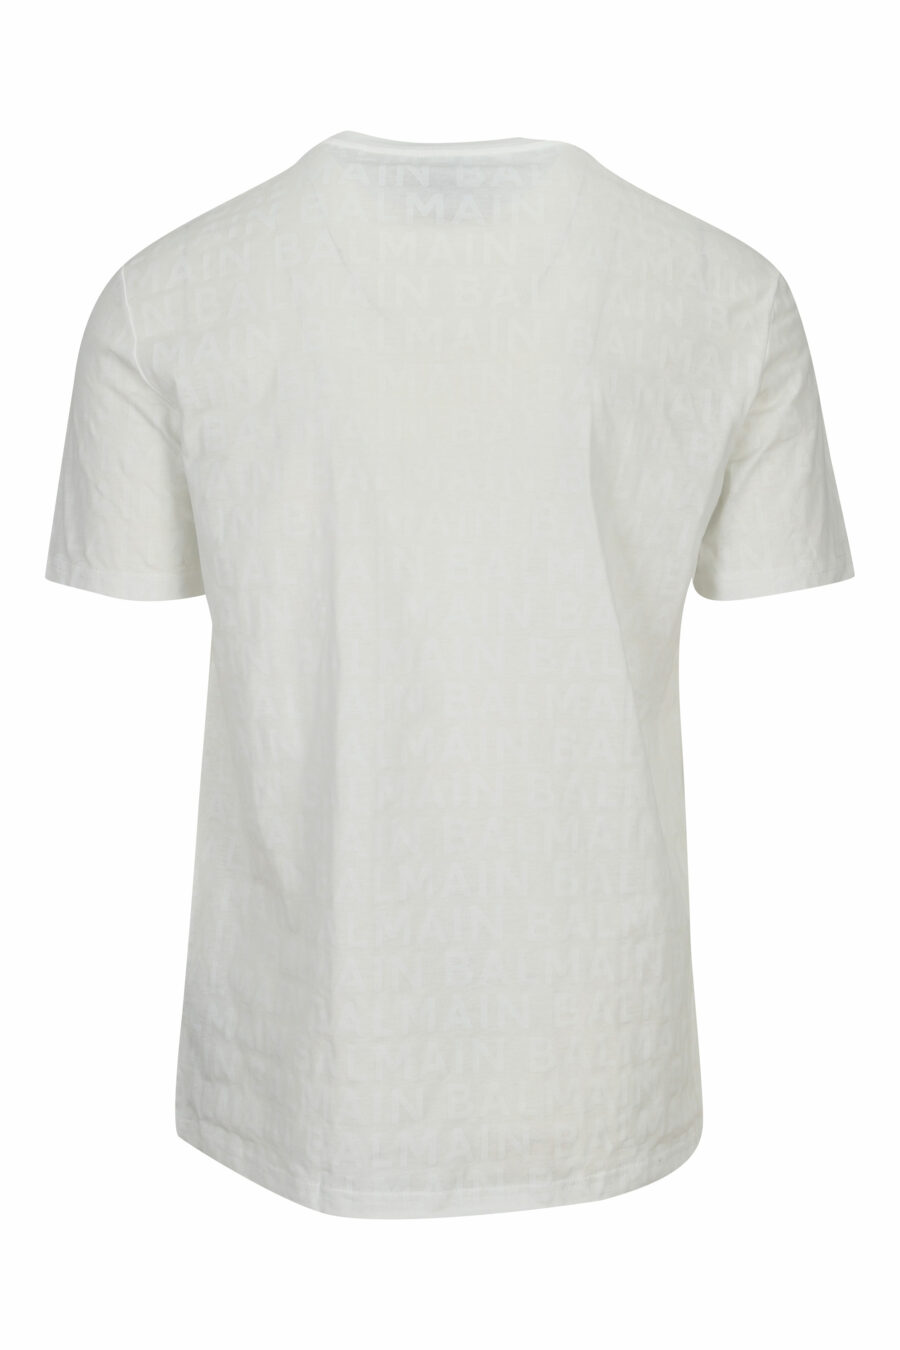 T-shirt branca com monograma monocromático - 8032674525390 1